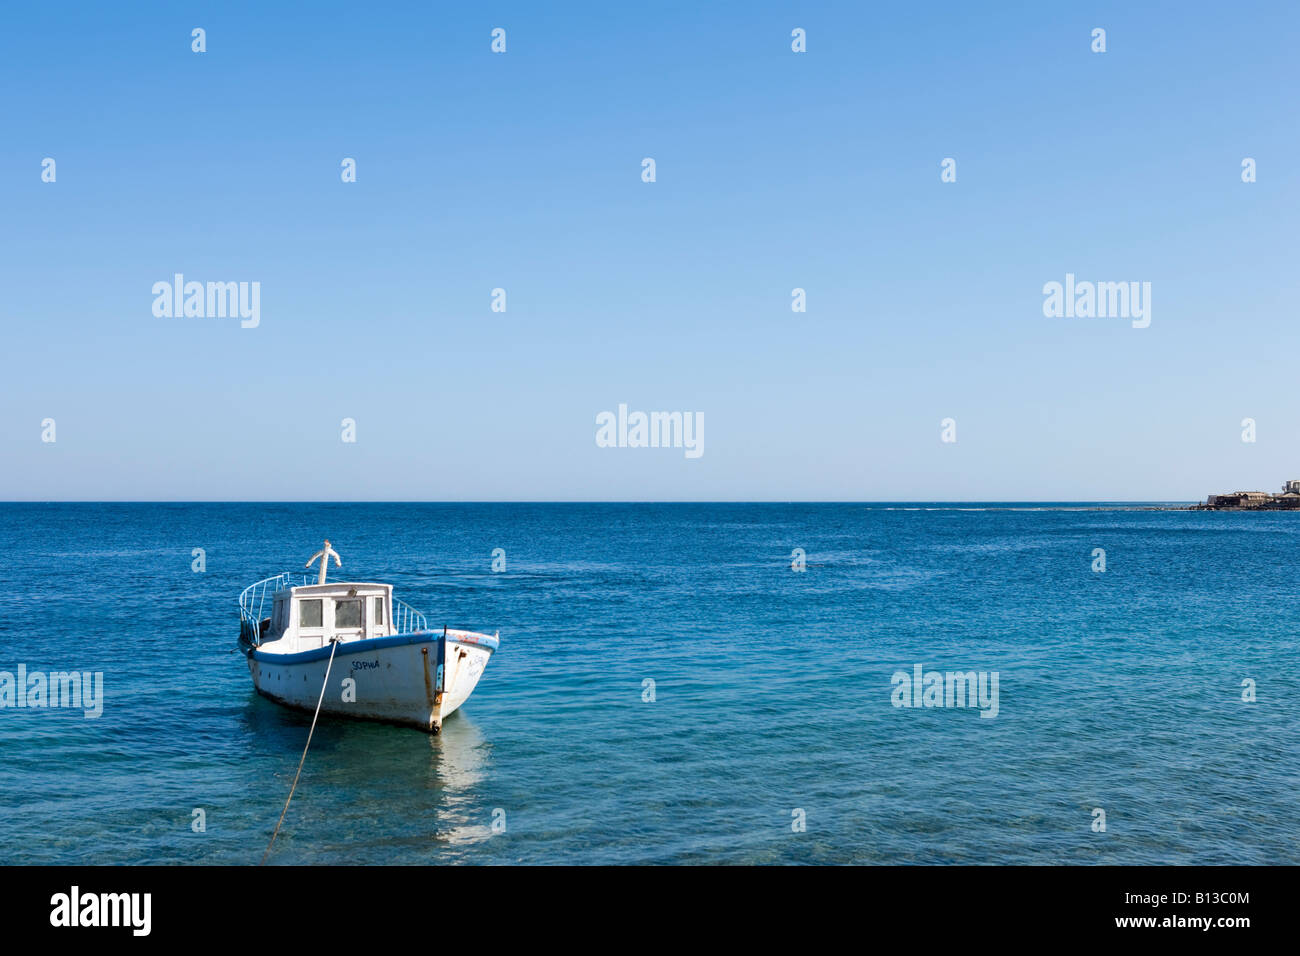 Bateau de pêche locales, Masbat area d'Asilah, Dahab, golfe d'Aqaba, côte de la mer Rouge, Sinaï Sud Egypte Banque D'Images